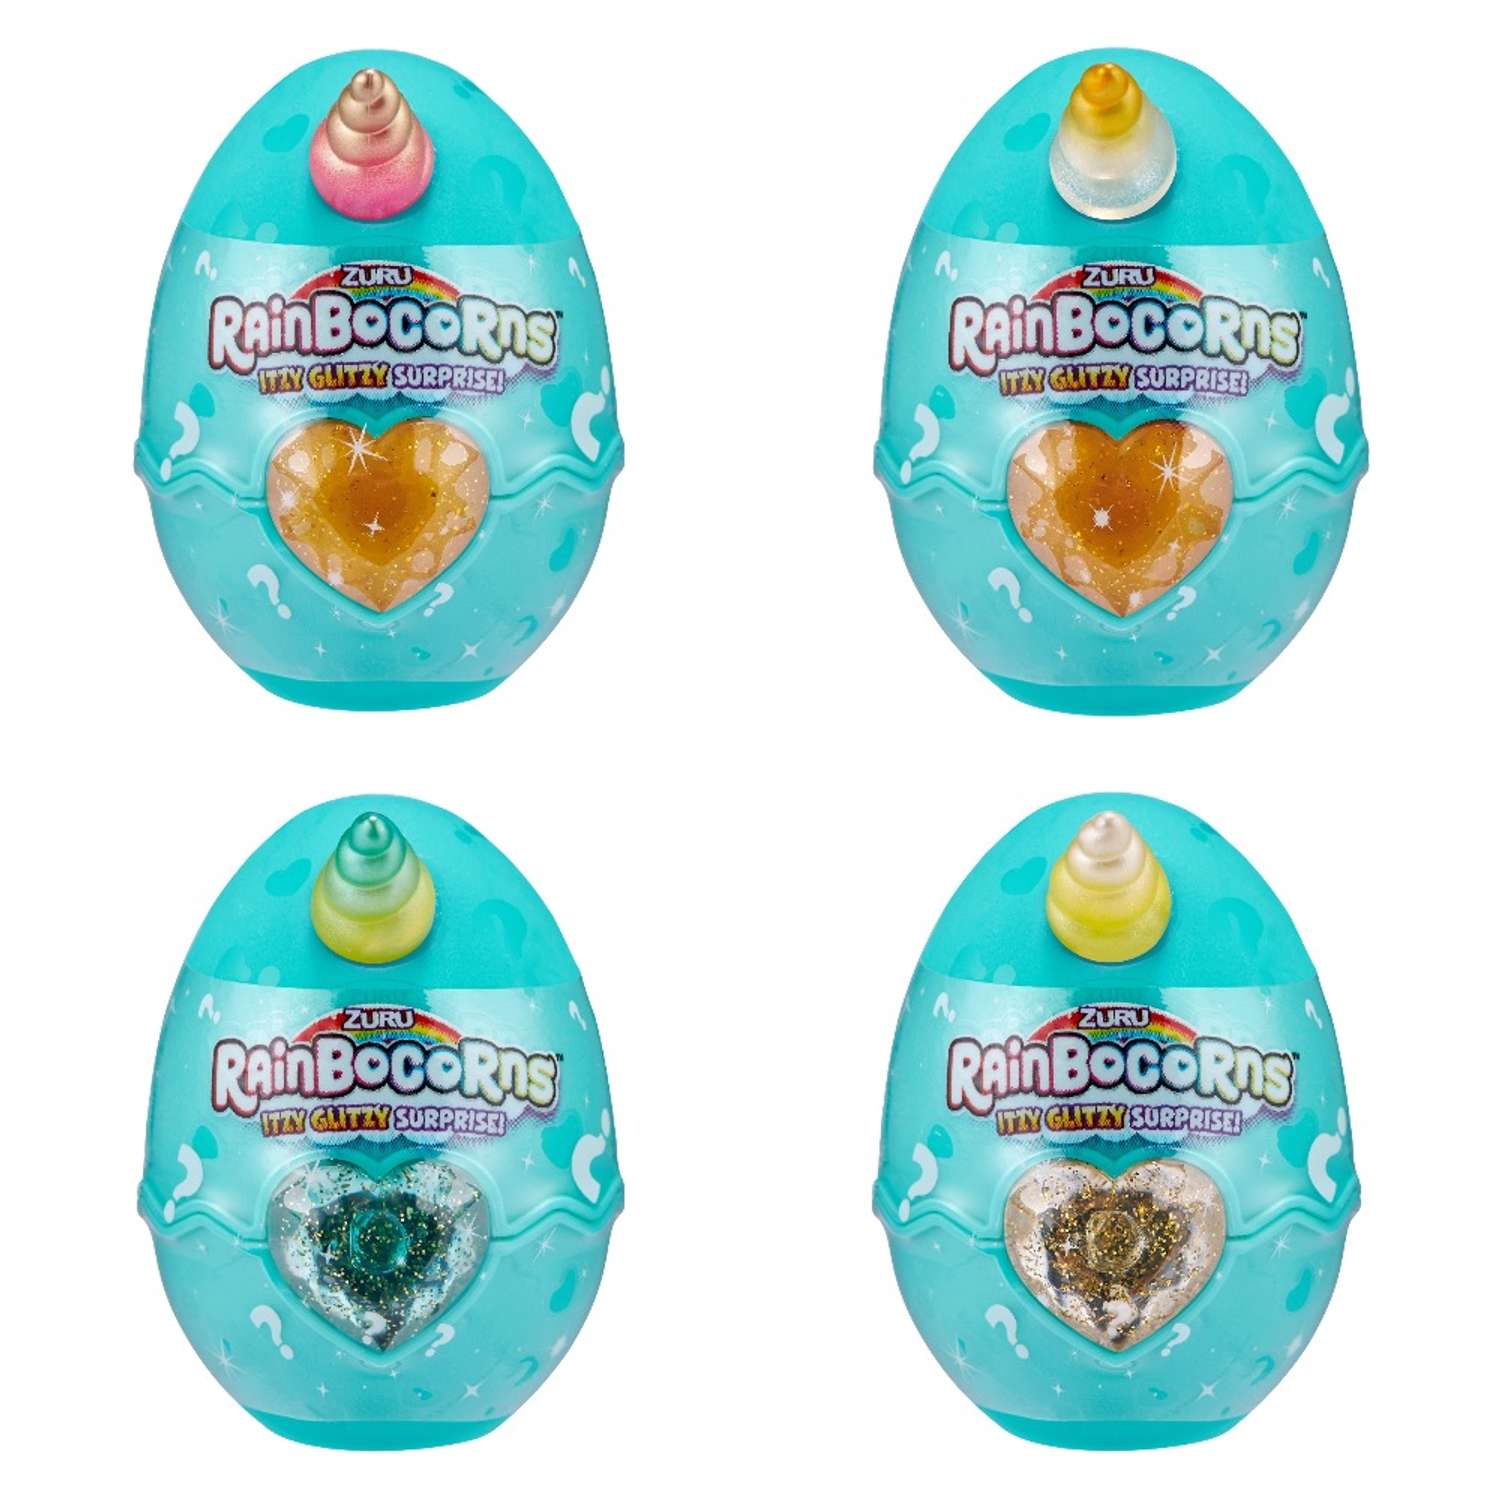 Игрушка Rainbocorns Rainbocorns Itzy glitzy surprise S1 в яйце в непрозрачной упаковке (Сюрприз) 9208-S001 - фото 2